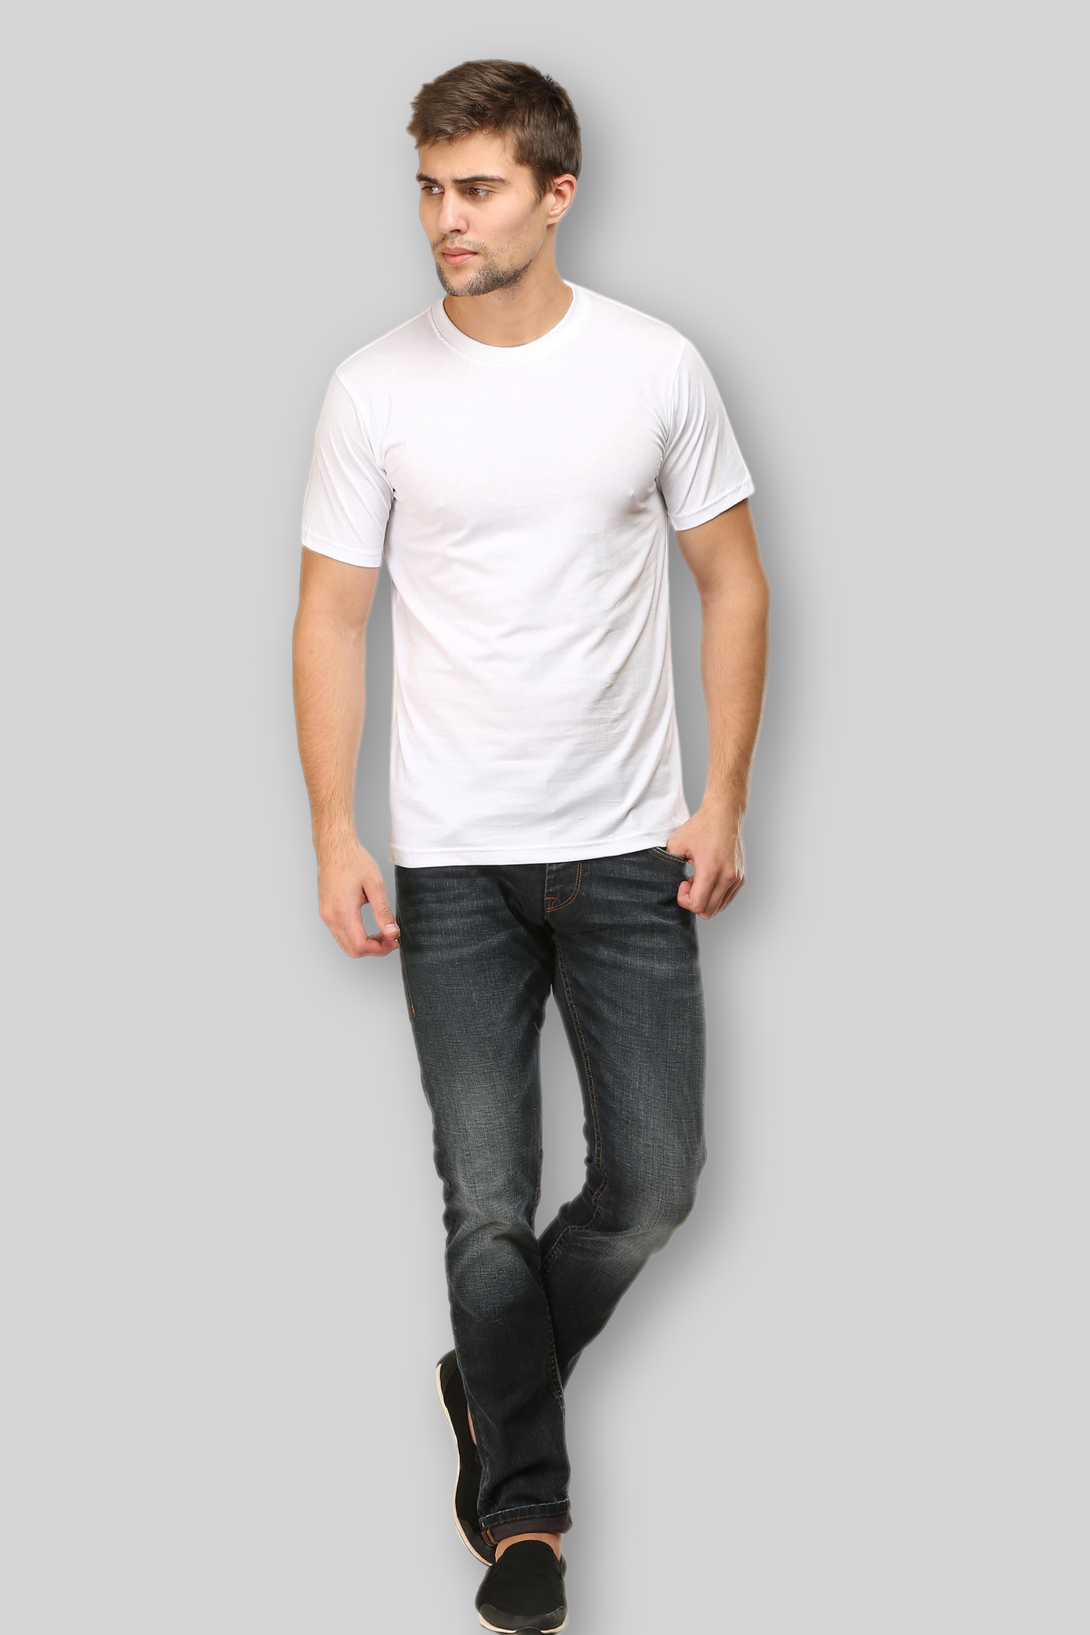 White T-Shirt For Men - WowWaves - 2